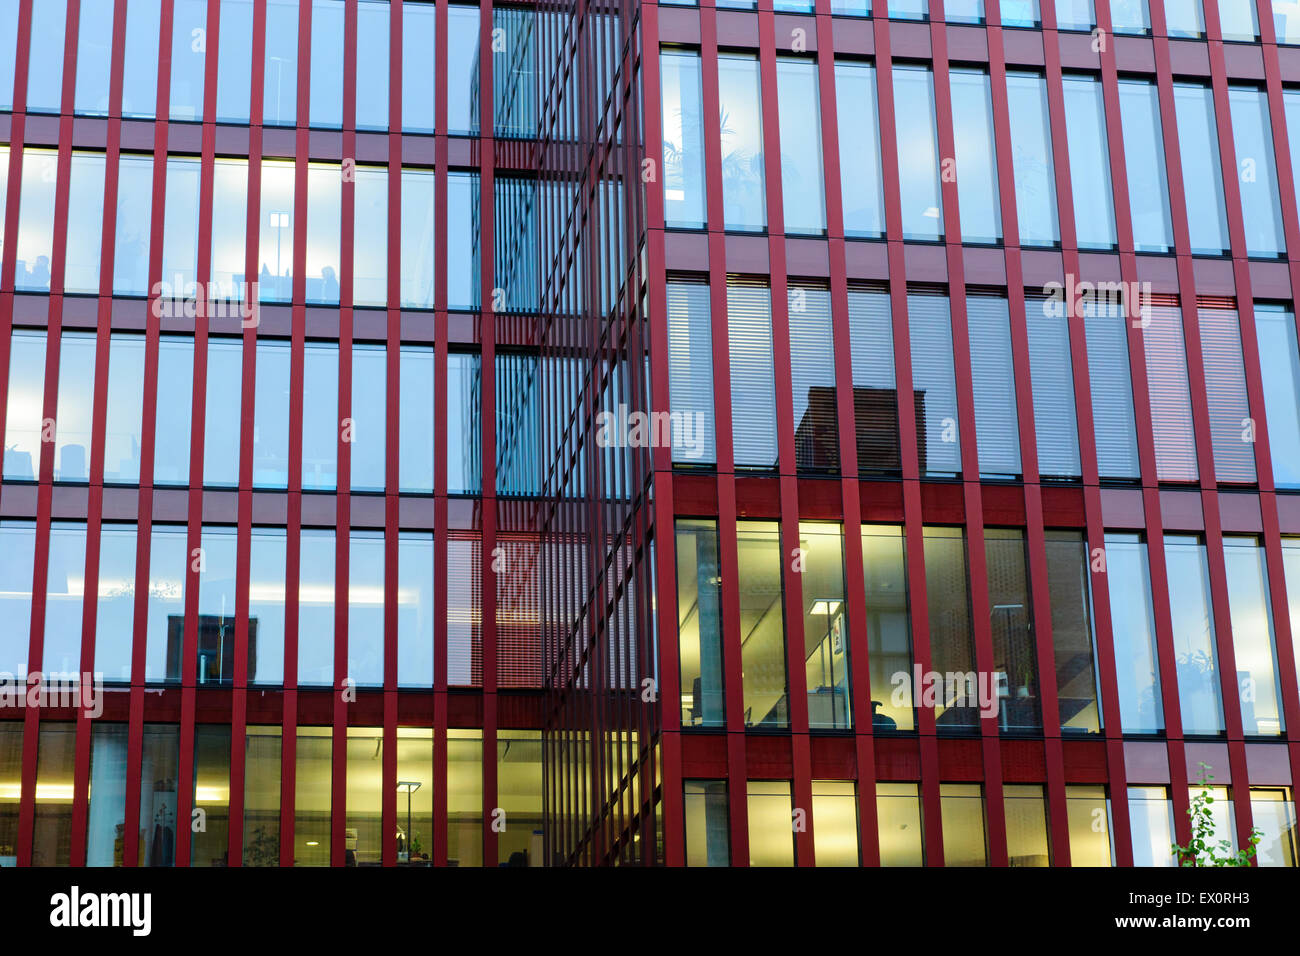 Detalle de un moderno edificio offfice rojo con reflejos en las ventanas Foto de stock